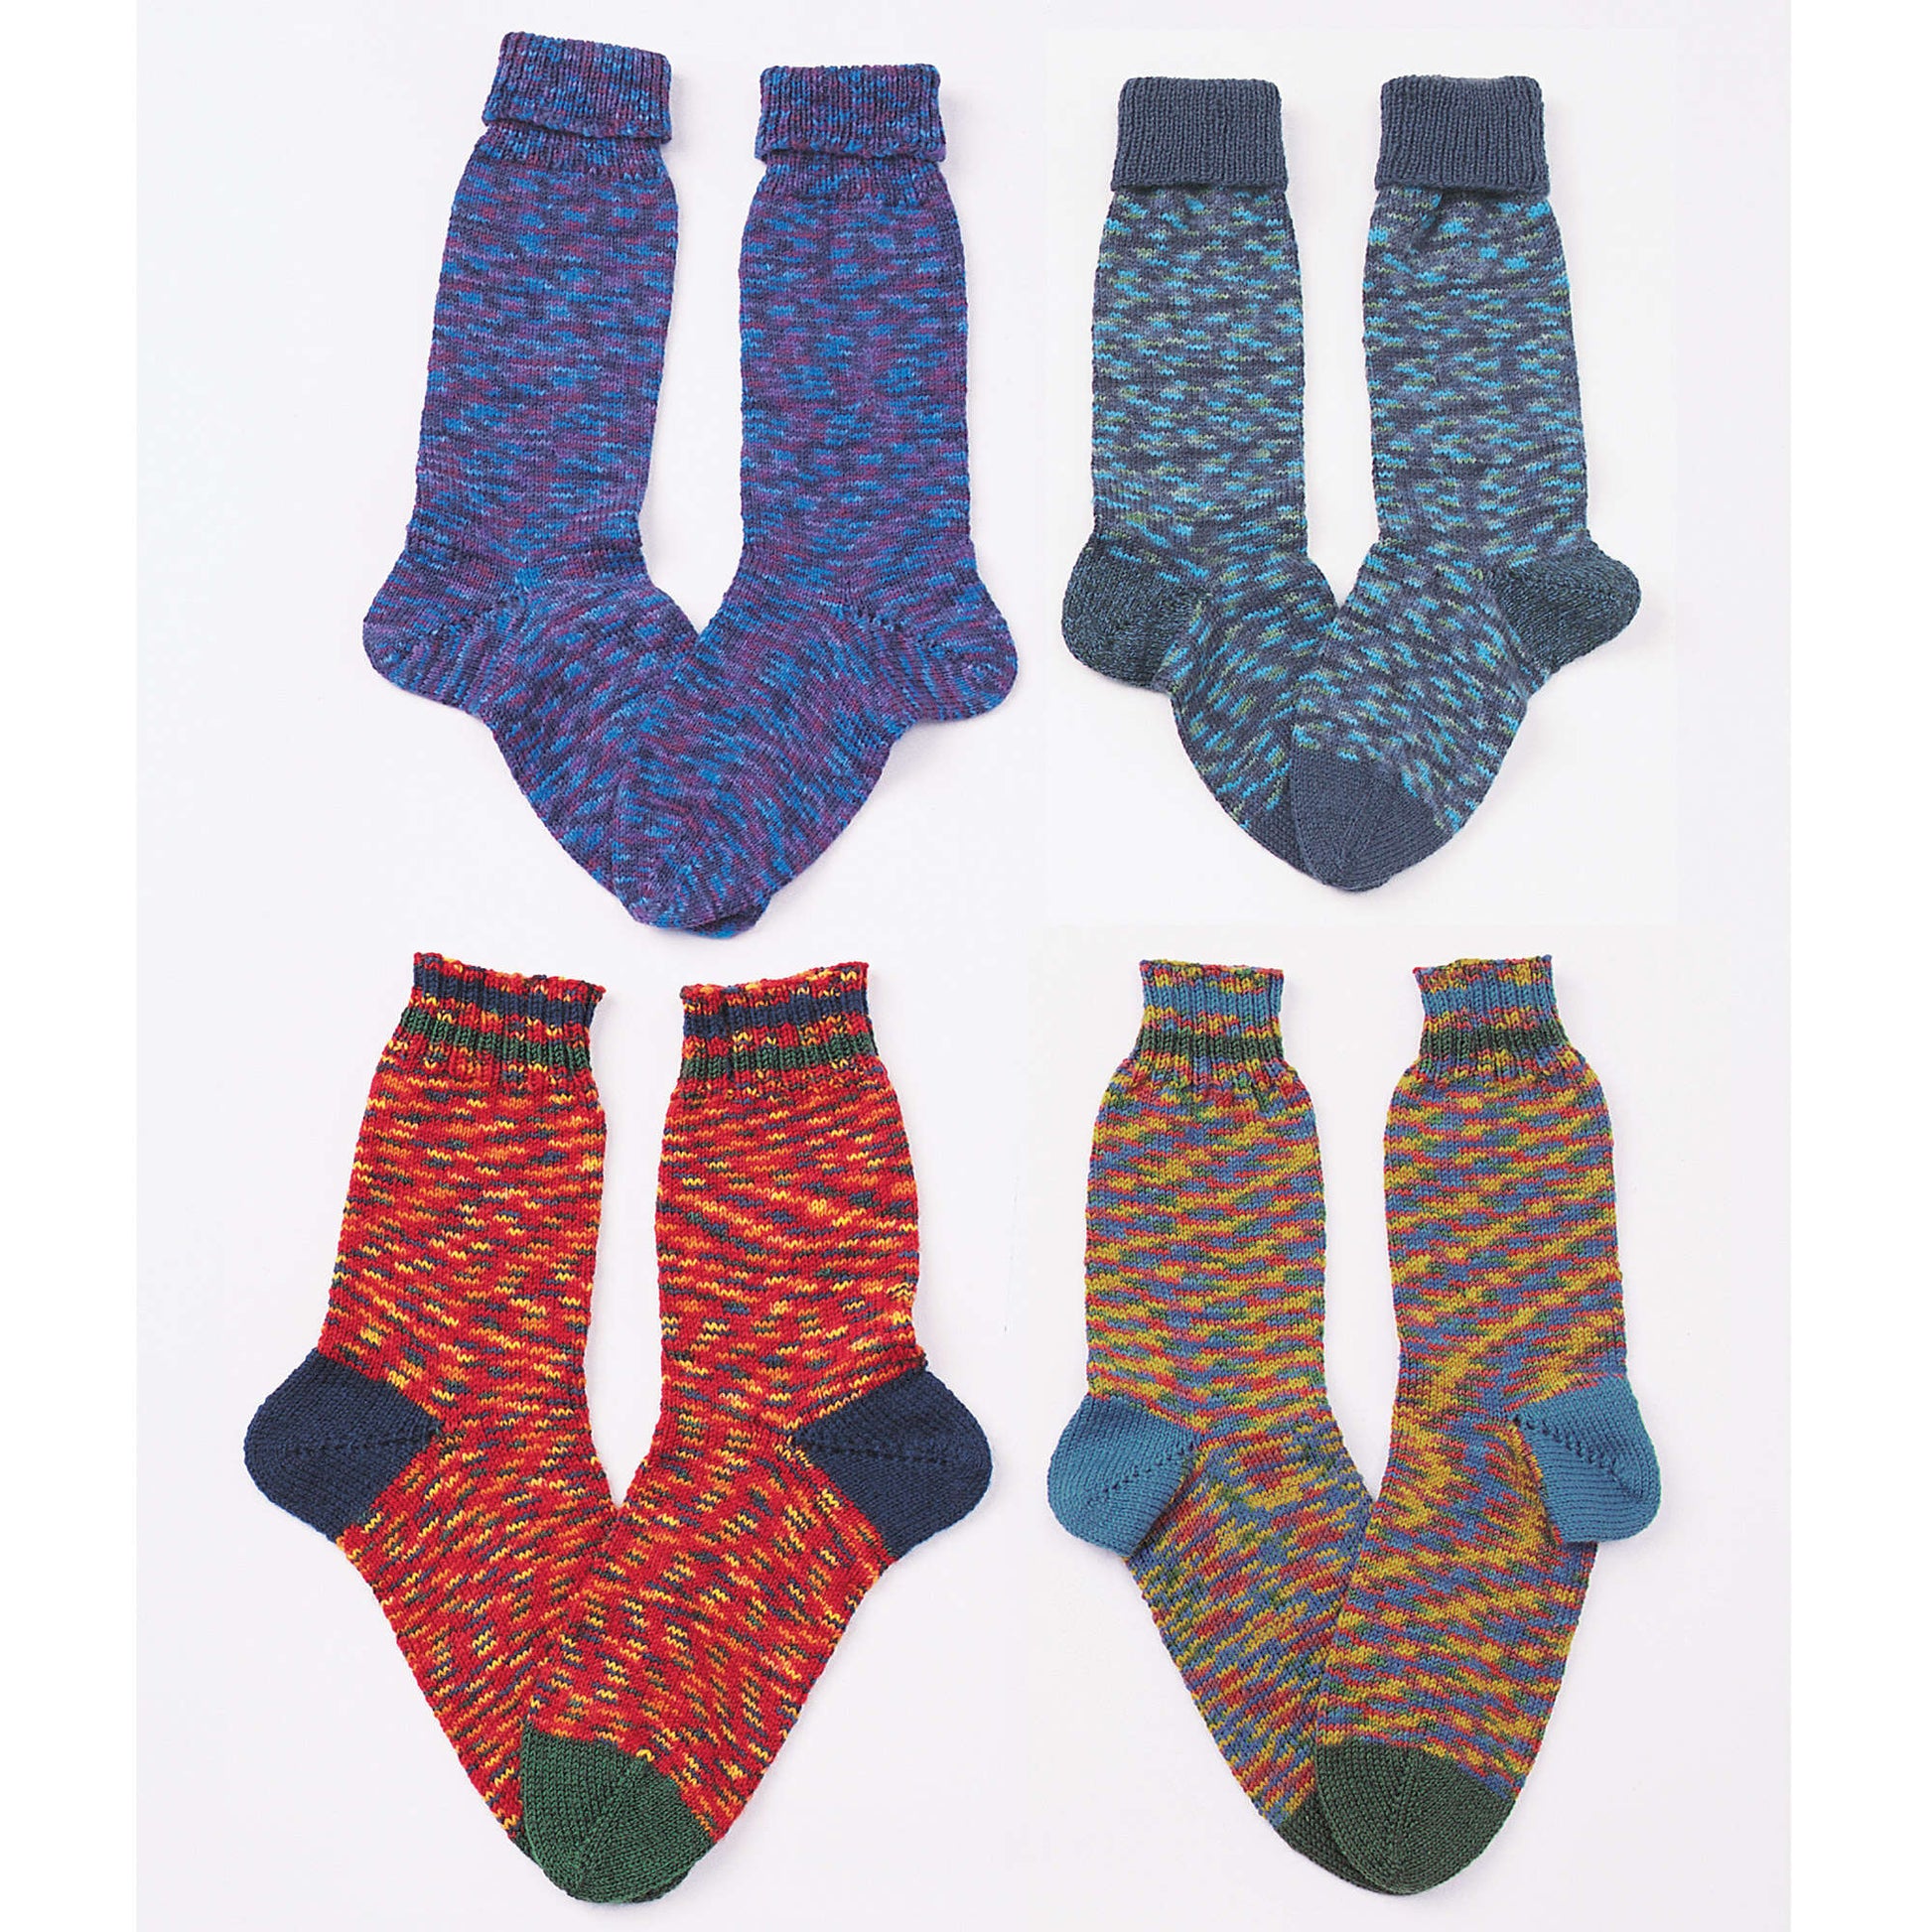 Free Patons Upsidedowners (Toe-Ups) Knit Pattern